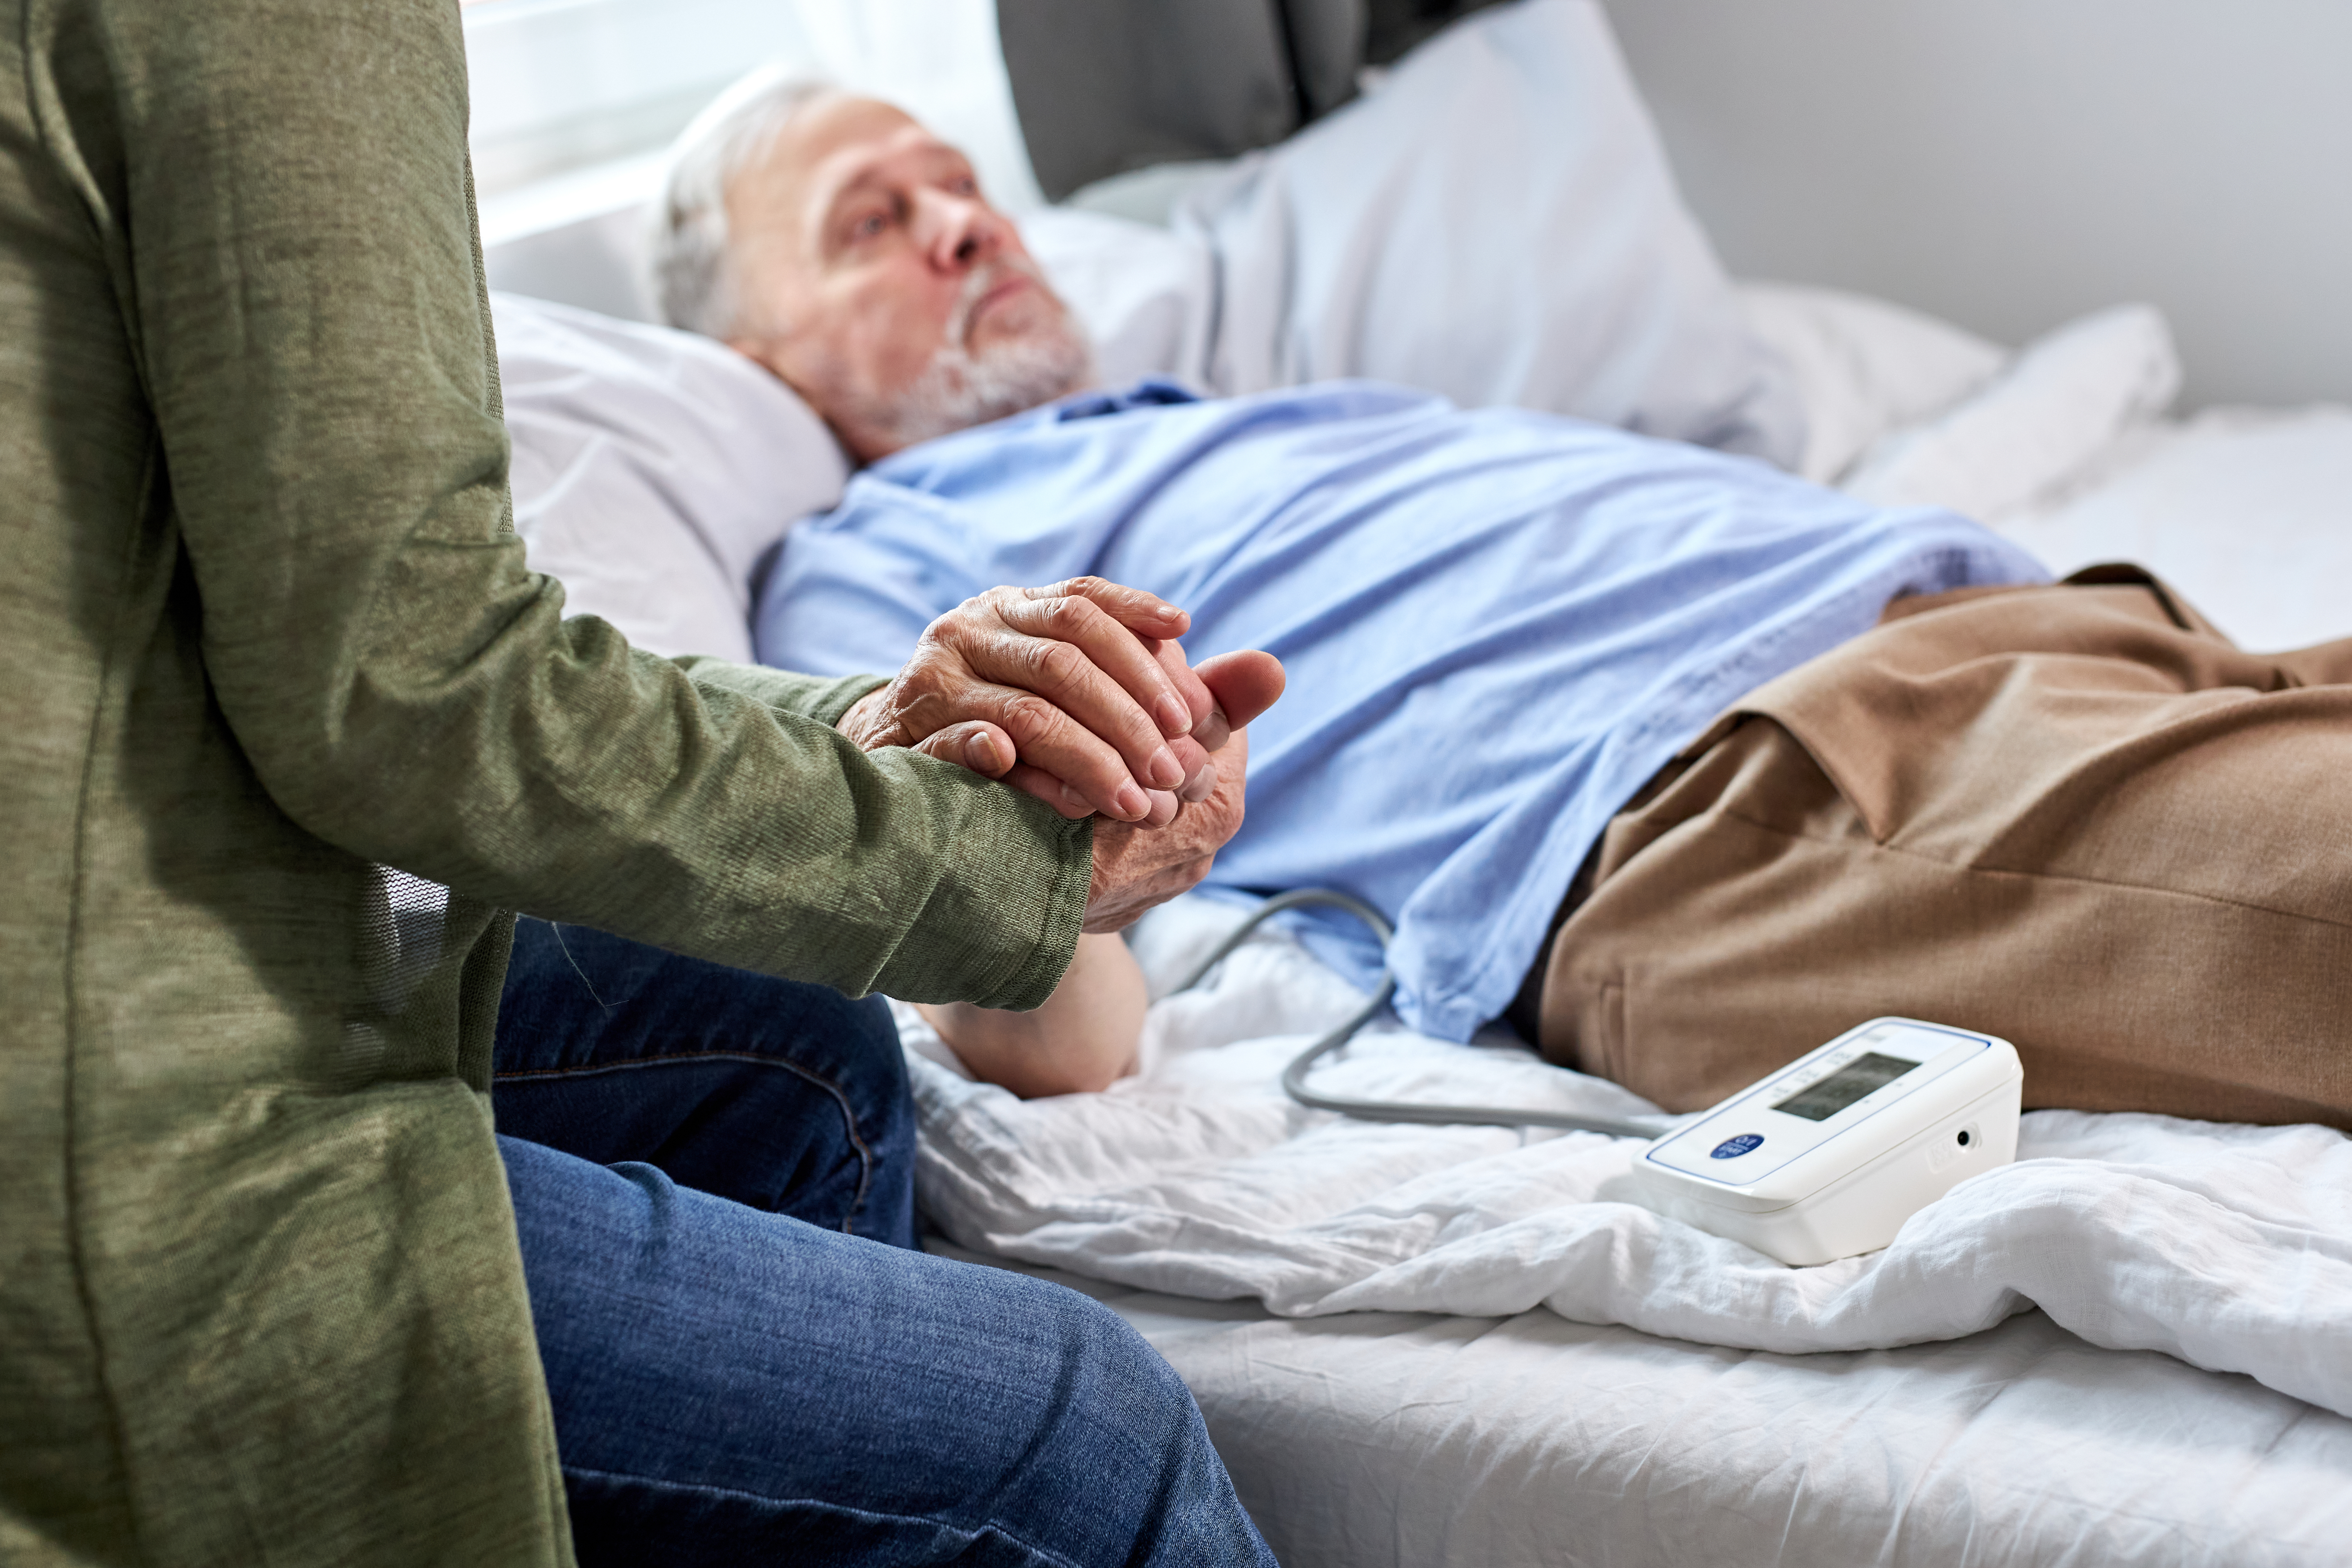 A woman holding an ailing elderly man's hand | Source: Shutterstock